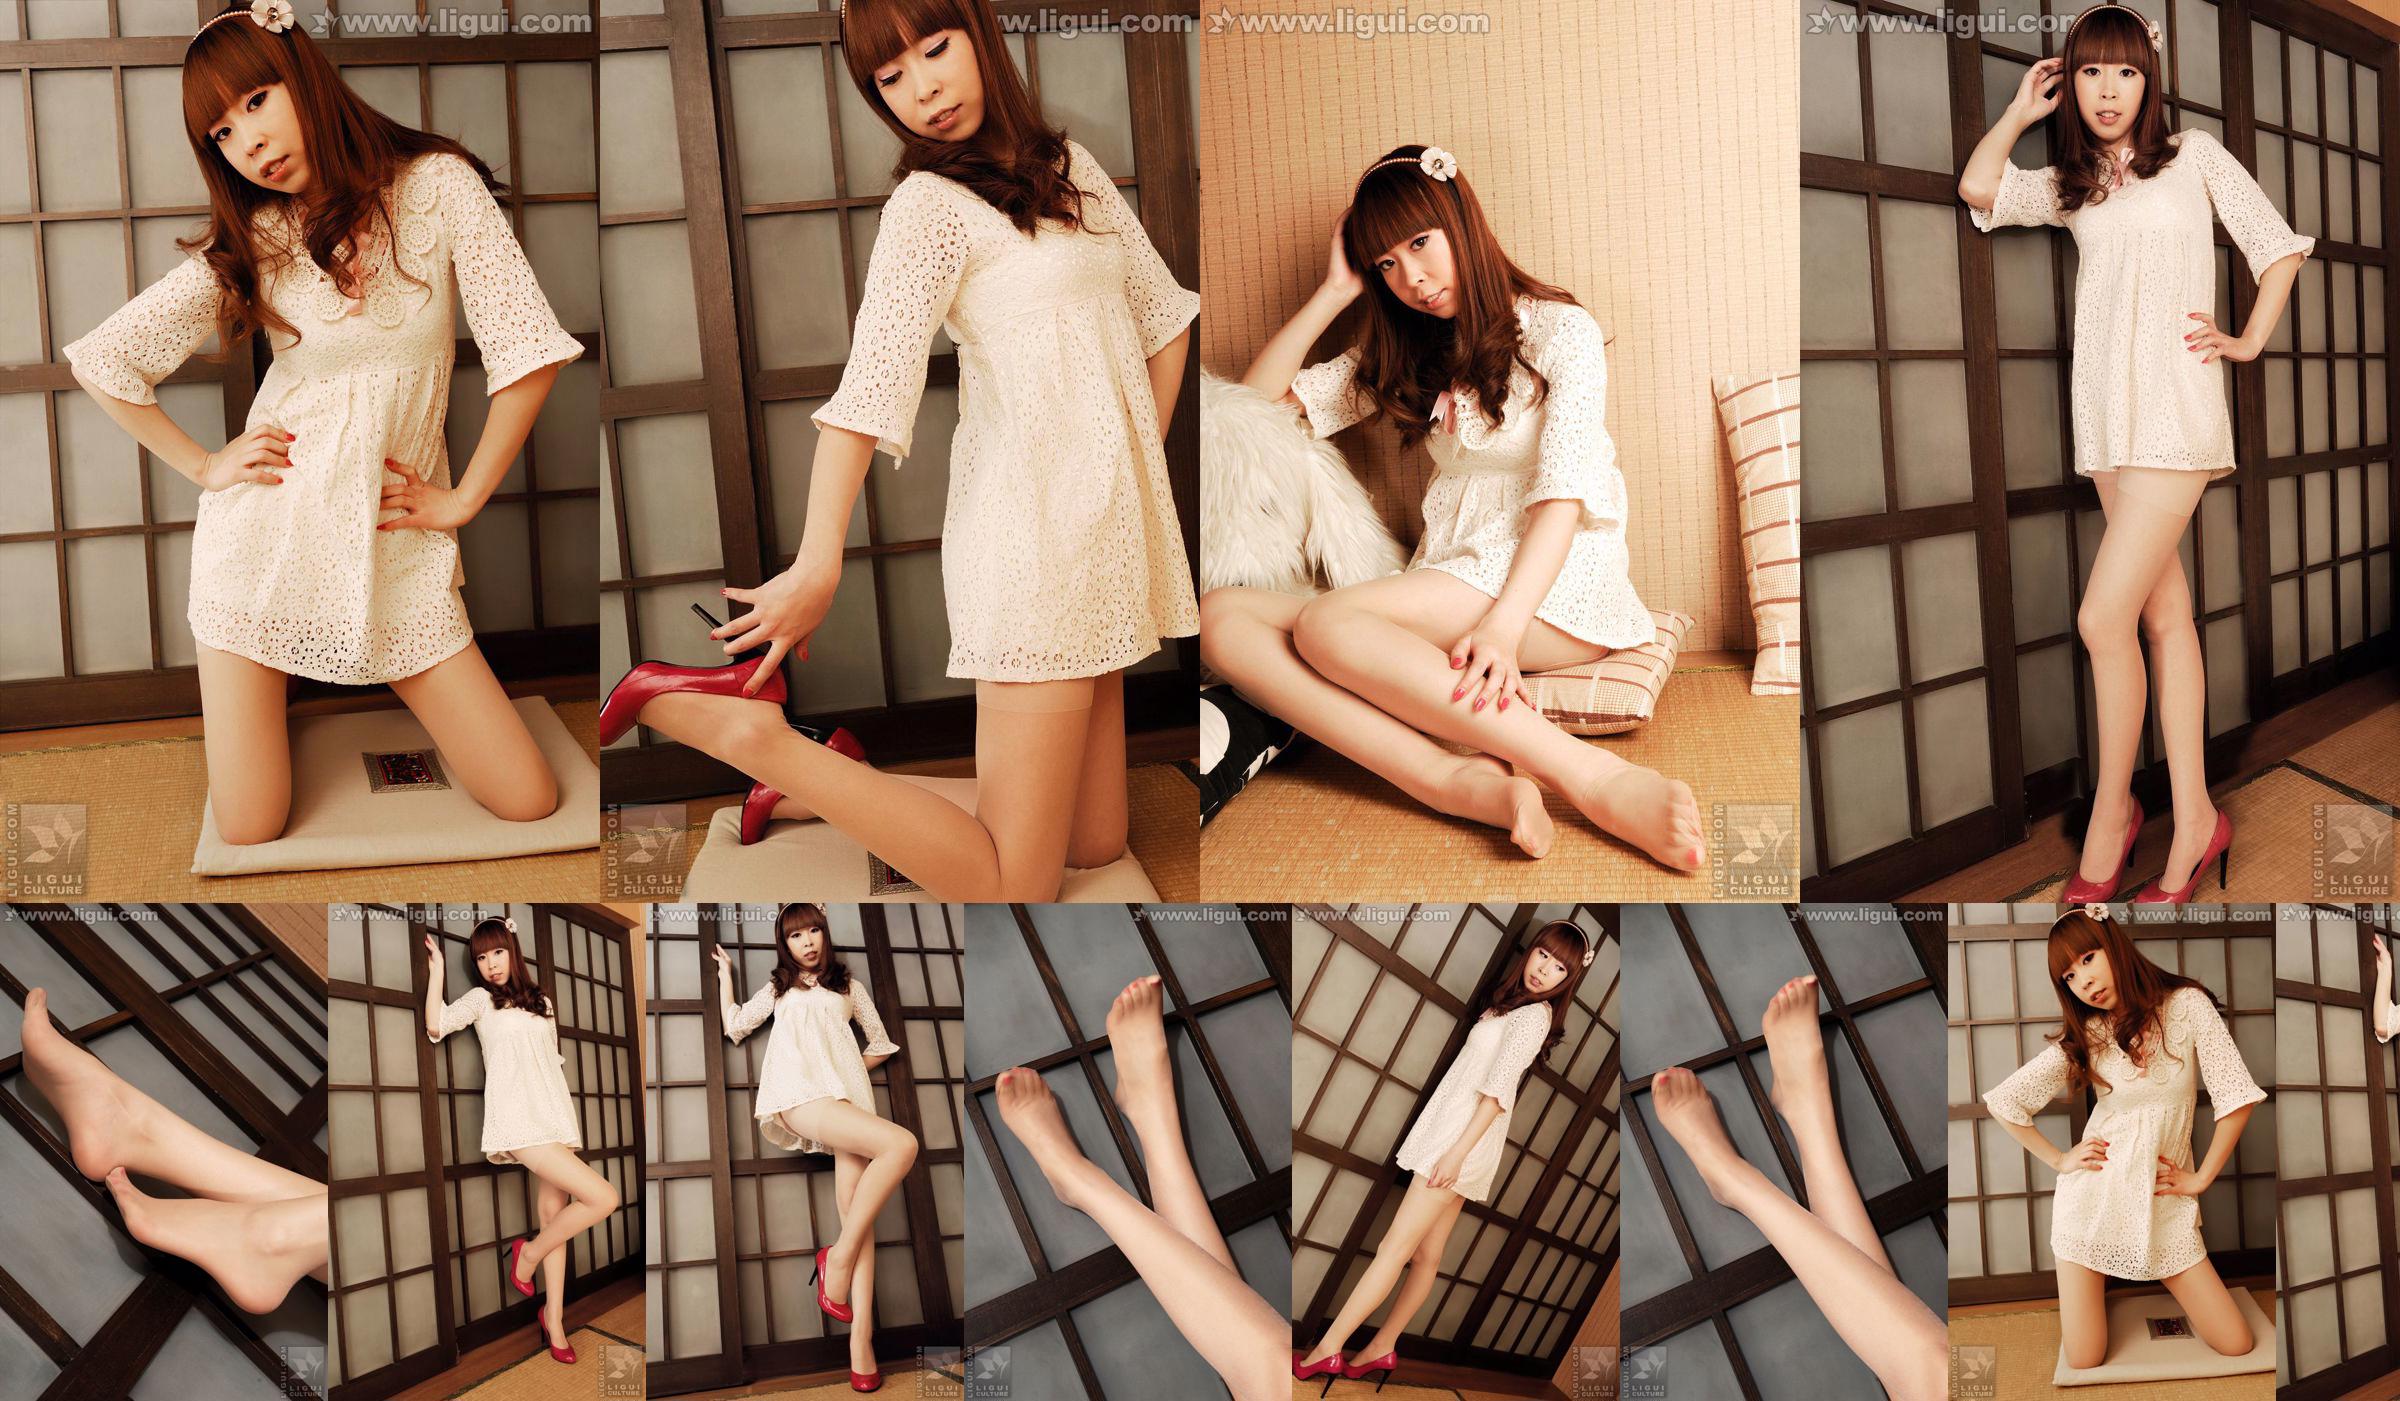 Modelo Vikcy "La tentación del estilo japonés" [丽 柜 LiGui] Fotos de piernas hermosas y pie de jade No.facede Página 1